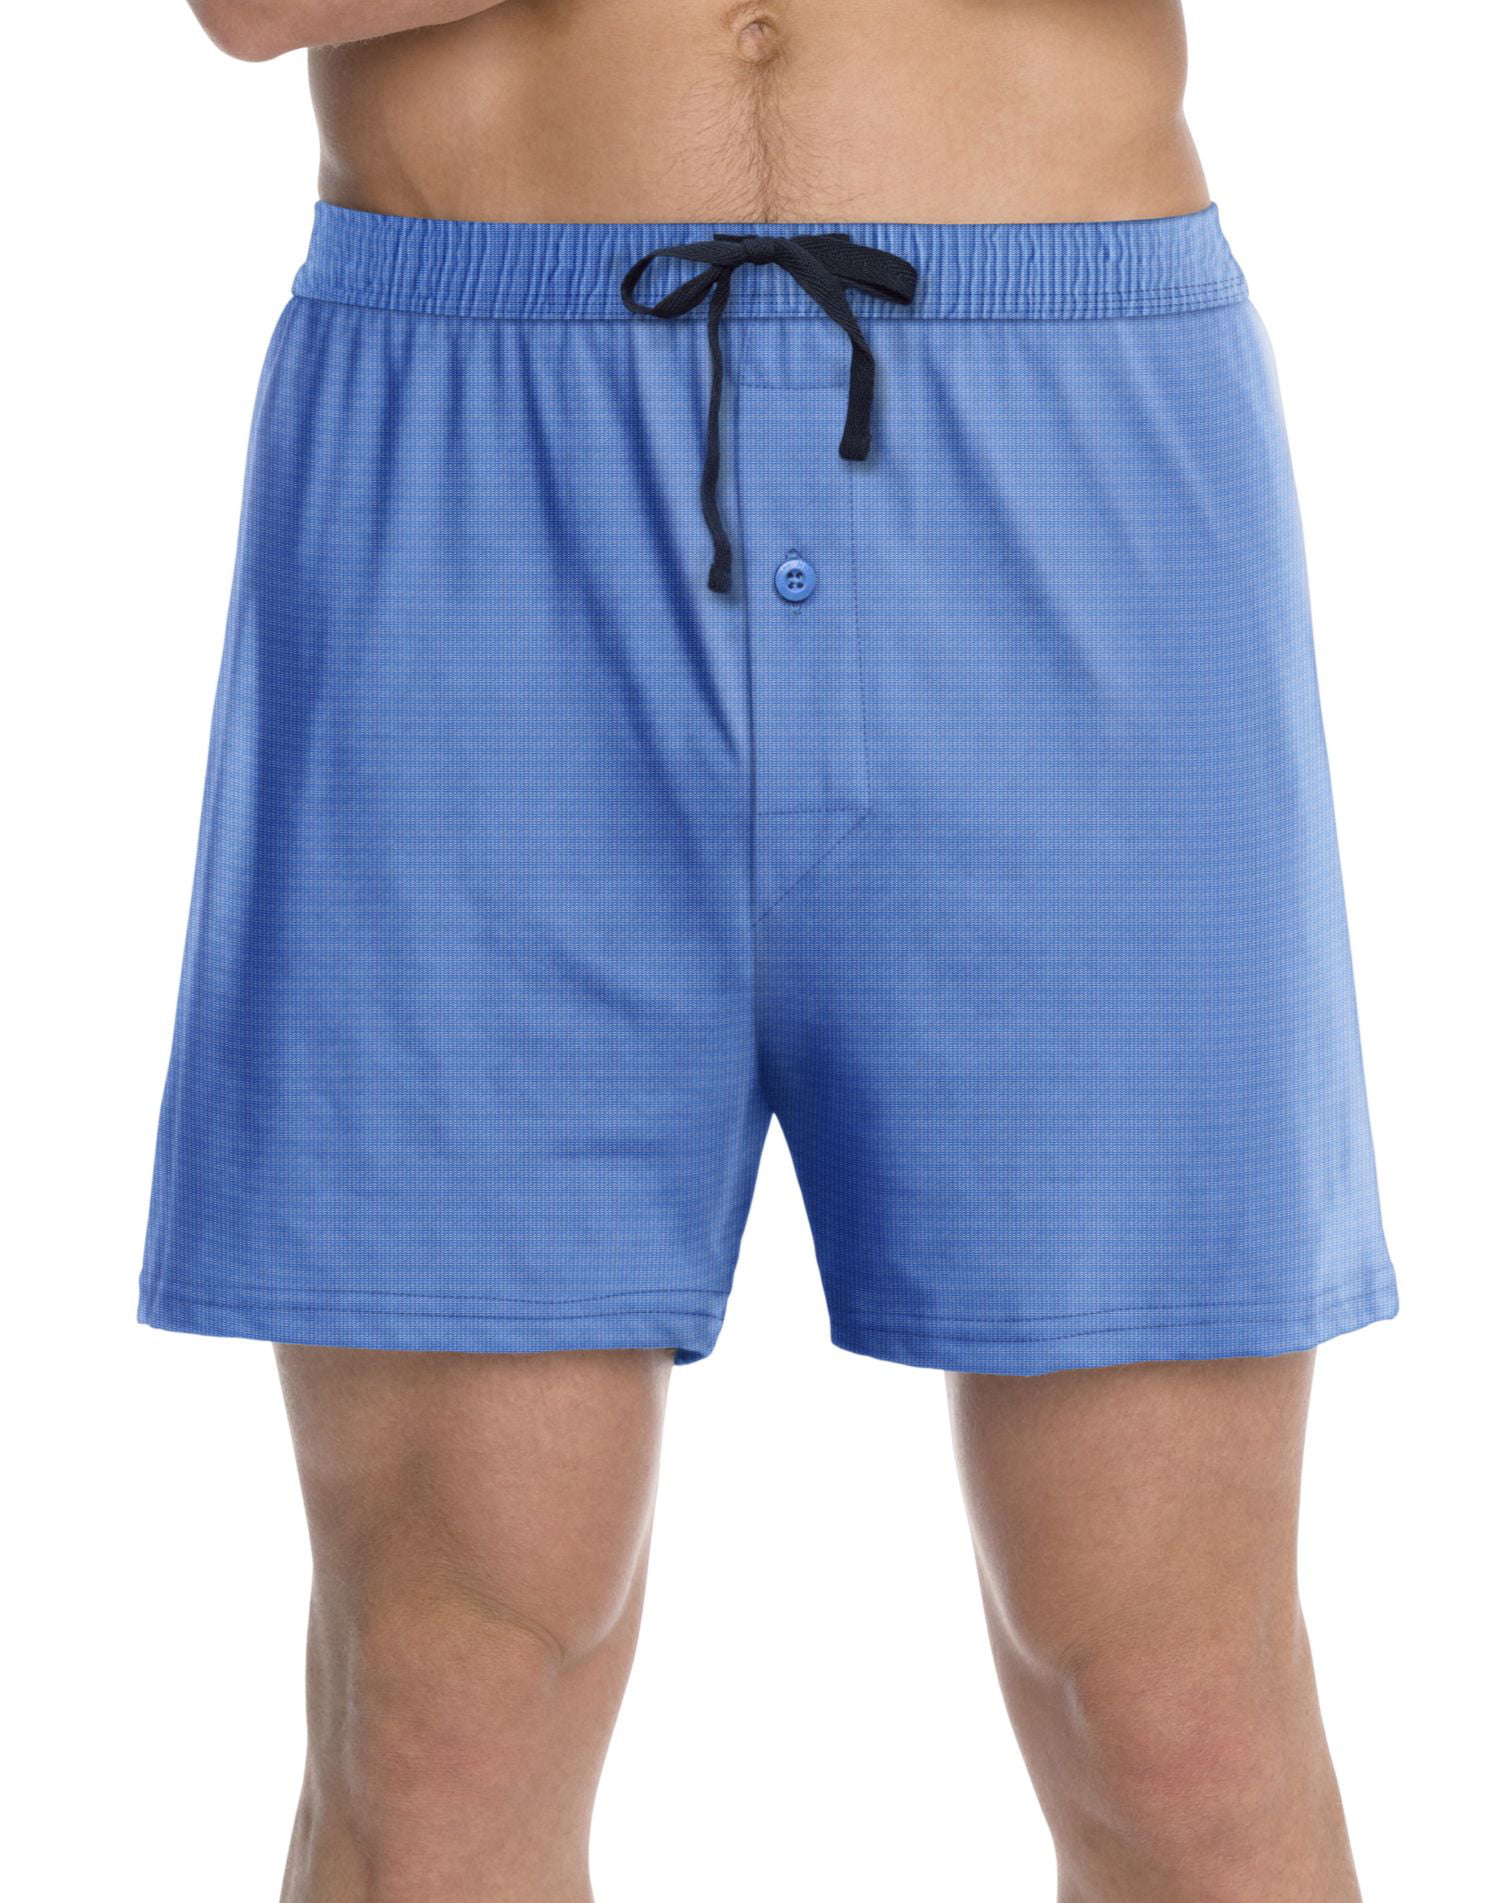 Hanes Men Short shorts - Walmart.com